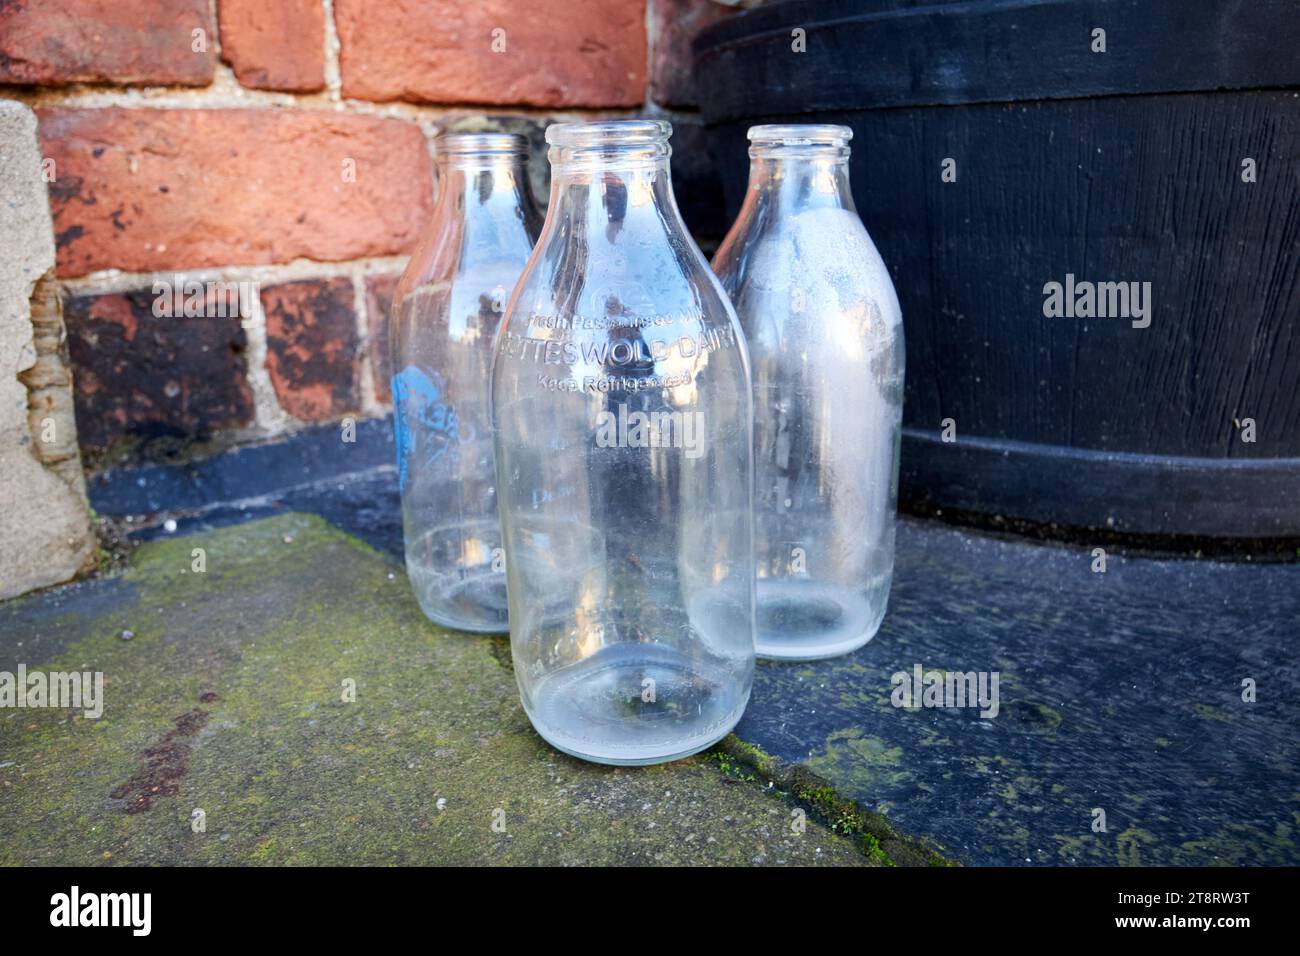 Alte traditionelle Pint-Milchflaschen aus dem Cotteswold-Tagebuch, die am Morgen vor der Haustür liegen gelassen wurden ormskirk, lancashire, england, großbritannien Stockfoto